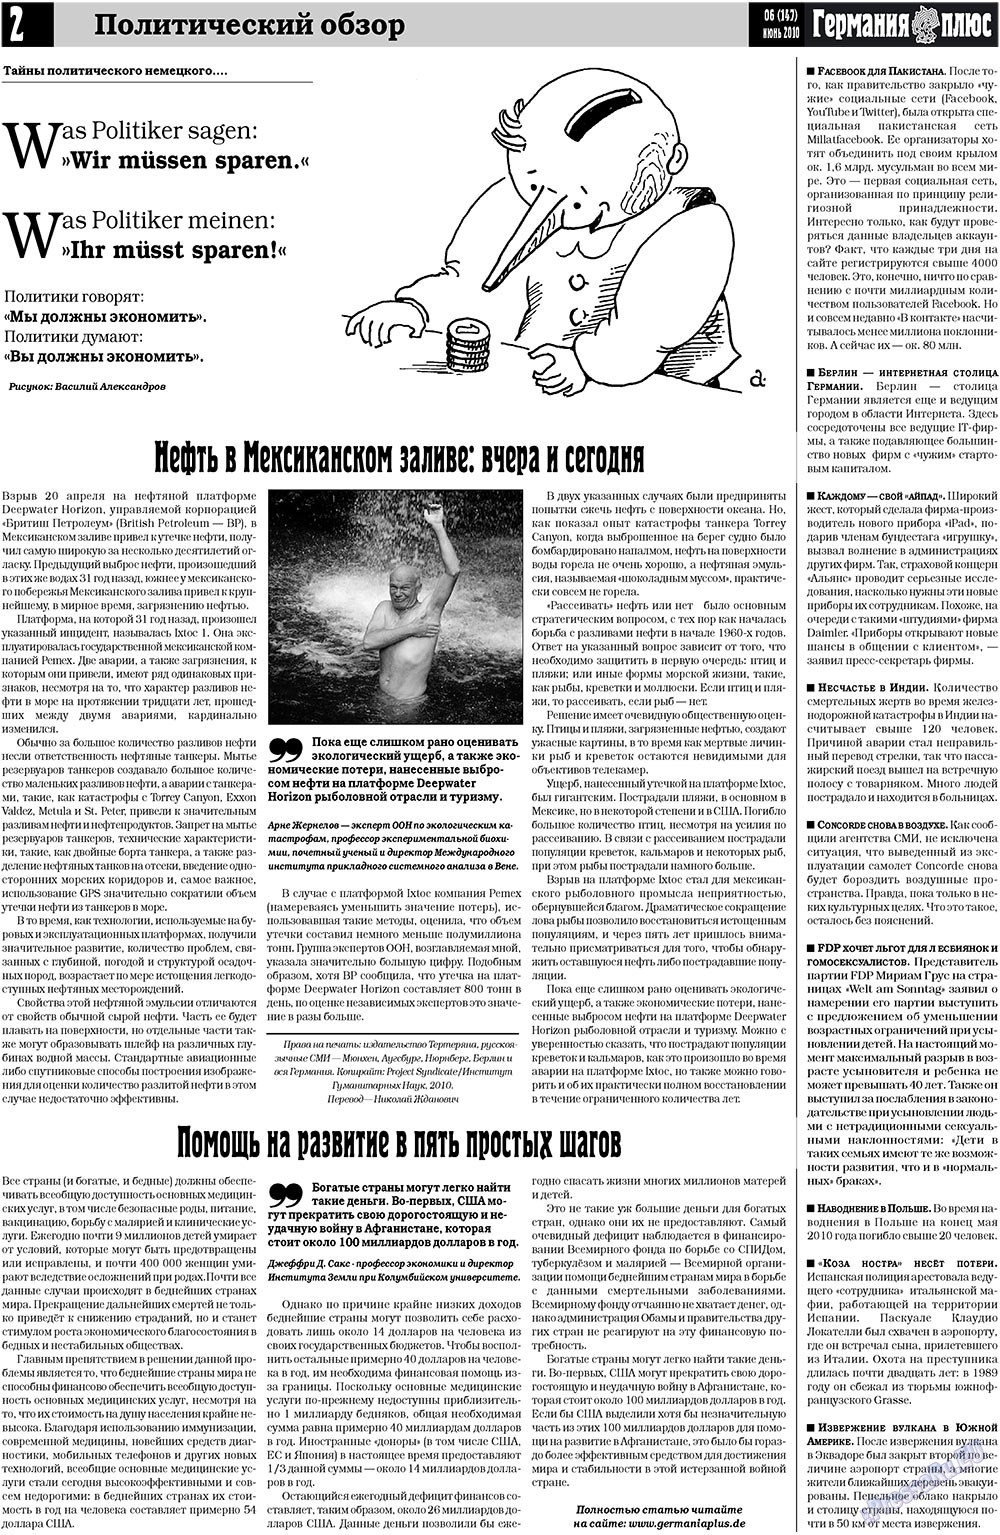 Германия плюс, газета. 2010 №6 стр.2